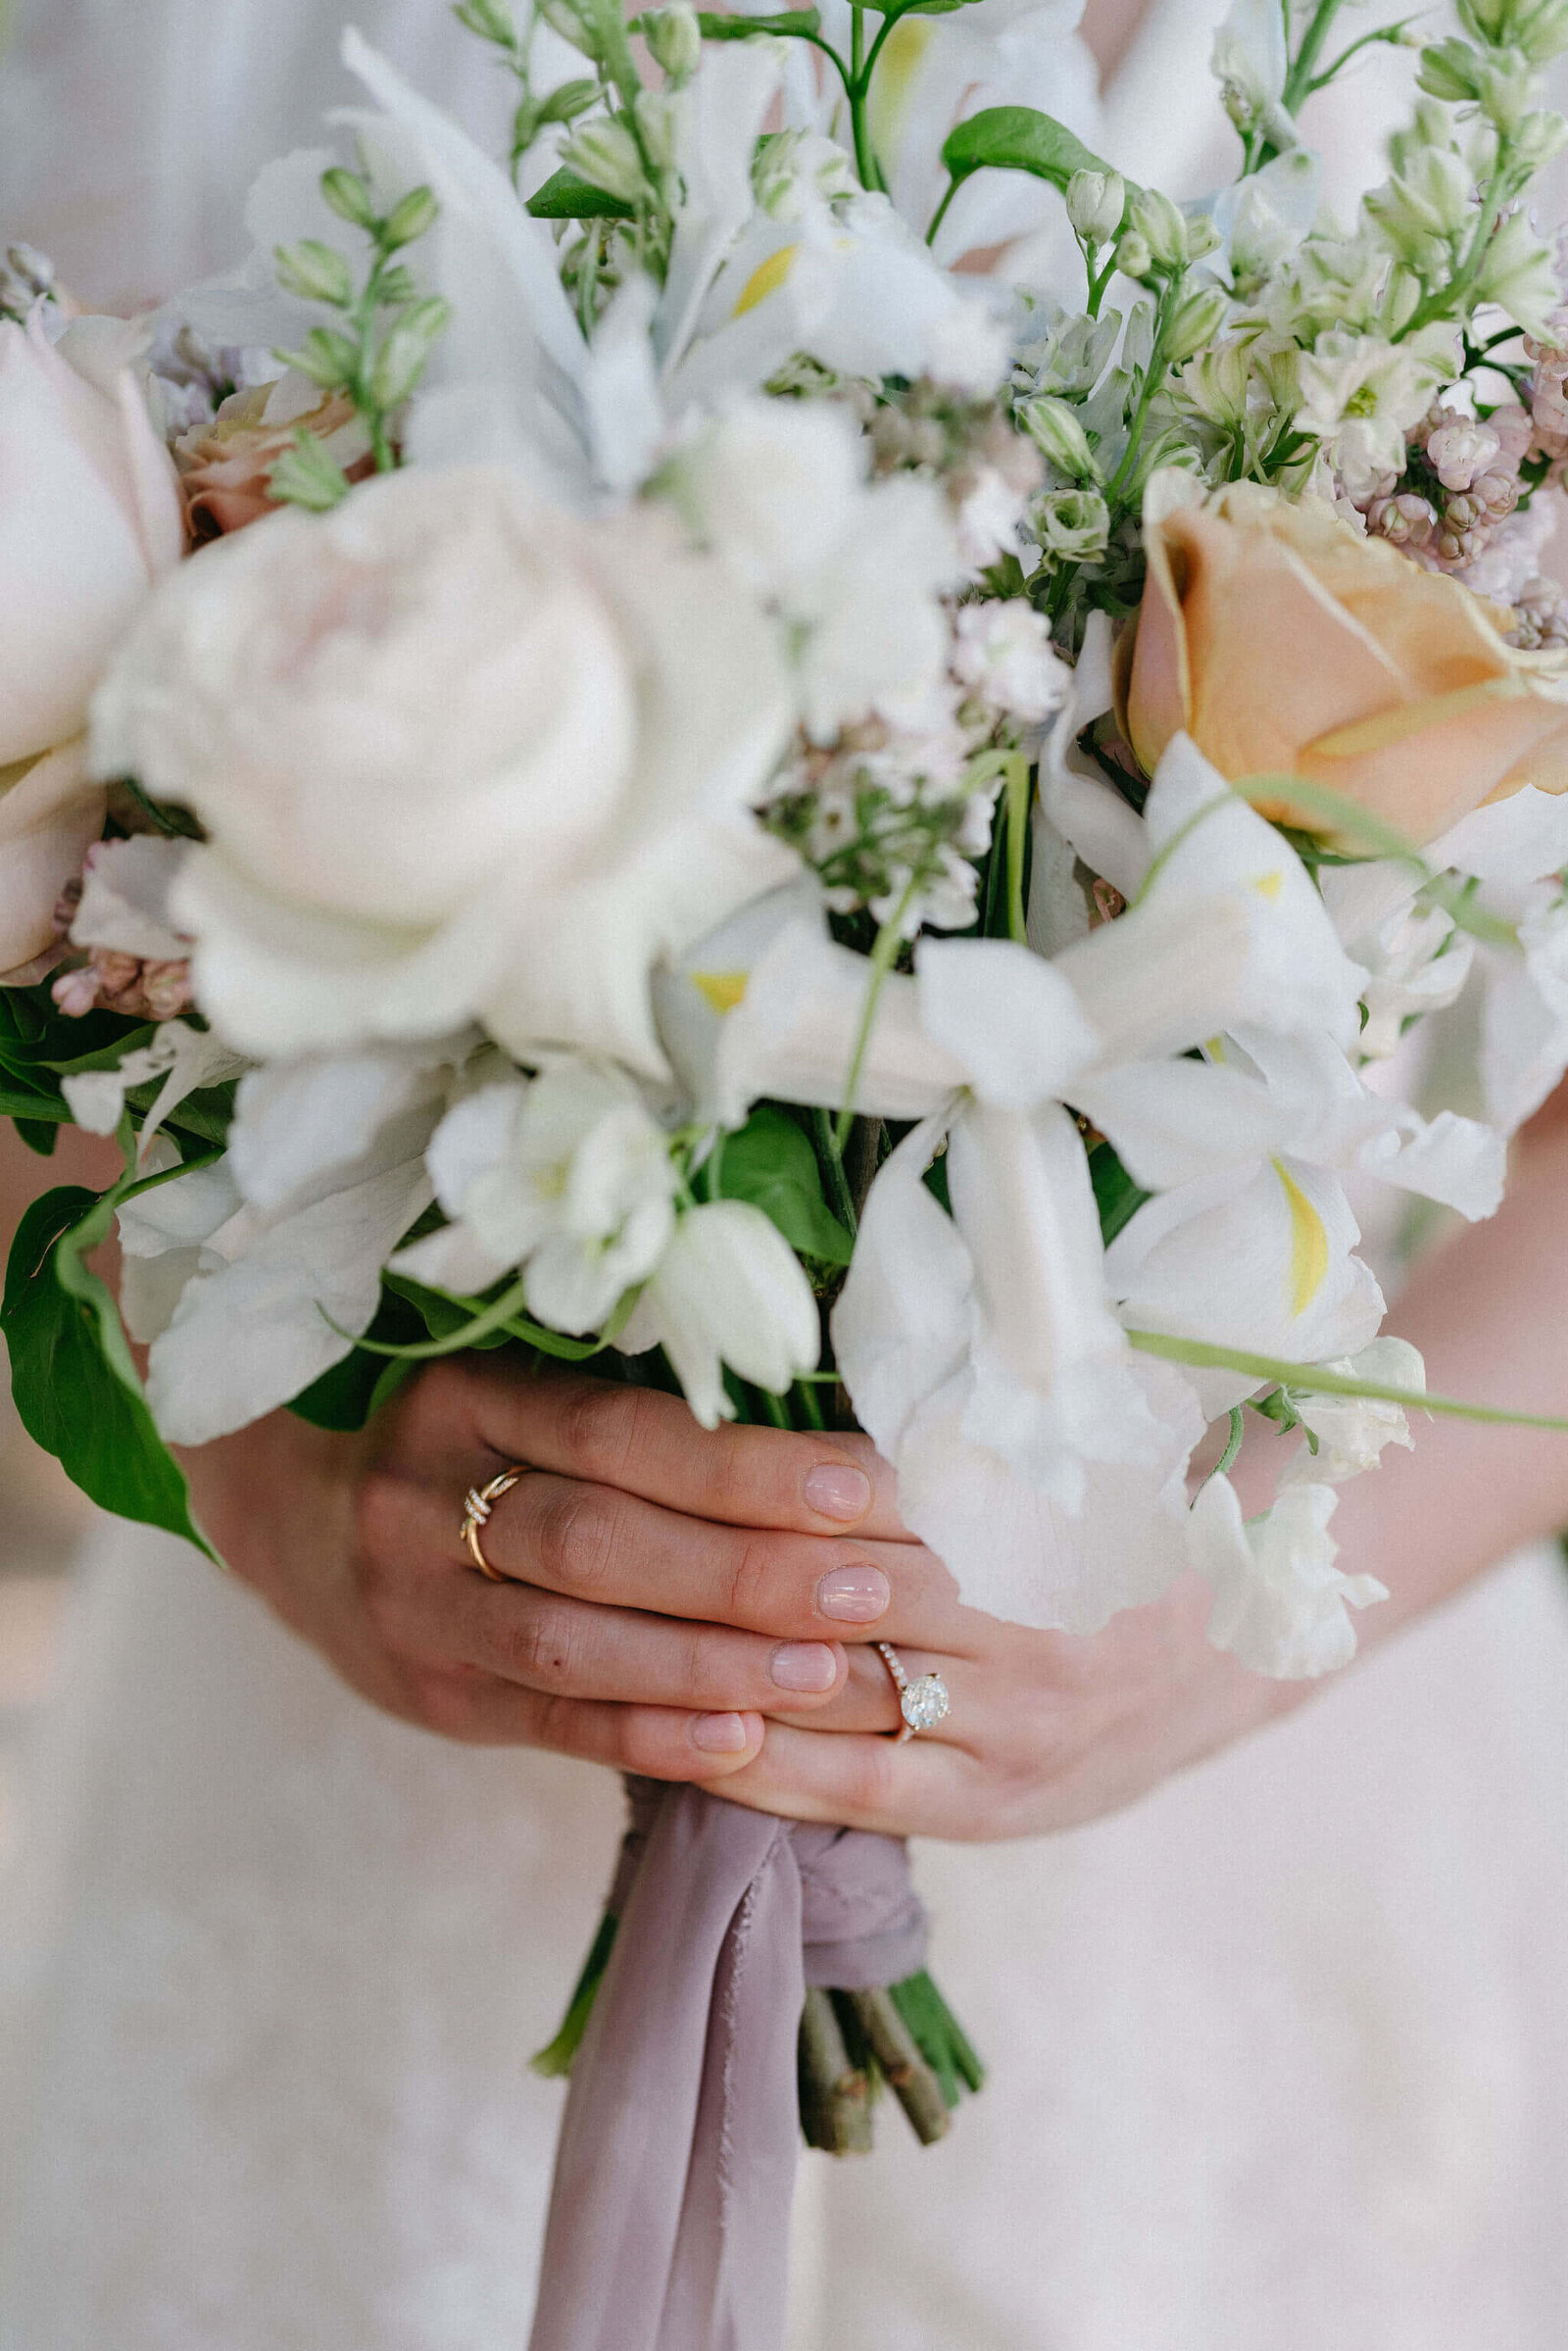 Wind and Sea Big Sur - Big Sur Wedding - Eda and Seif - Big Sur Wedding Florist - Carmel Wedding Florist (184)